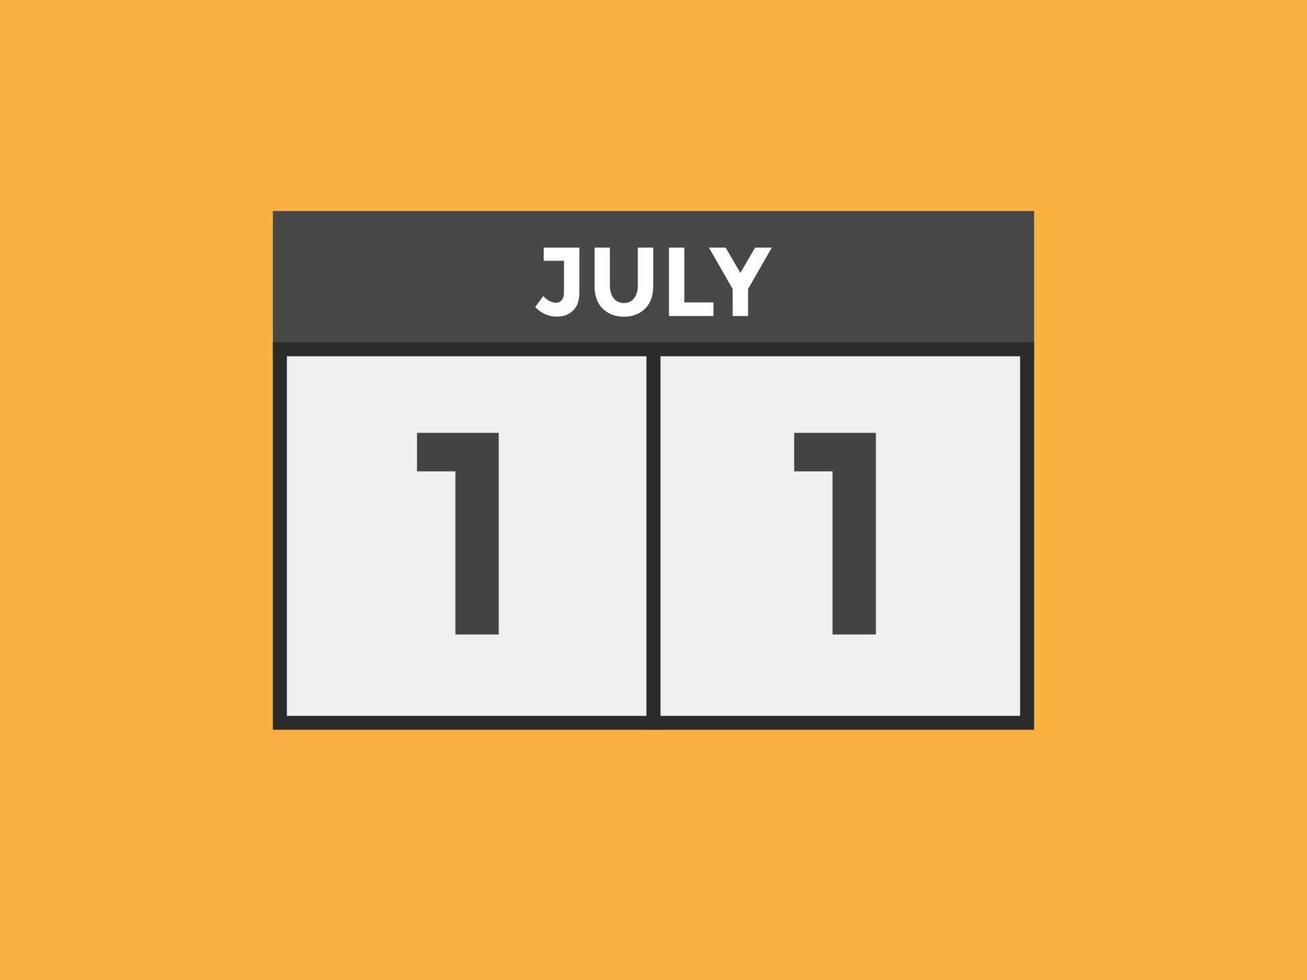 juli 11 kalender påminnelse. 11th juli dagligen kalender ikon mall. kalender 11th juli ikon design mall. vektor illustration